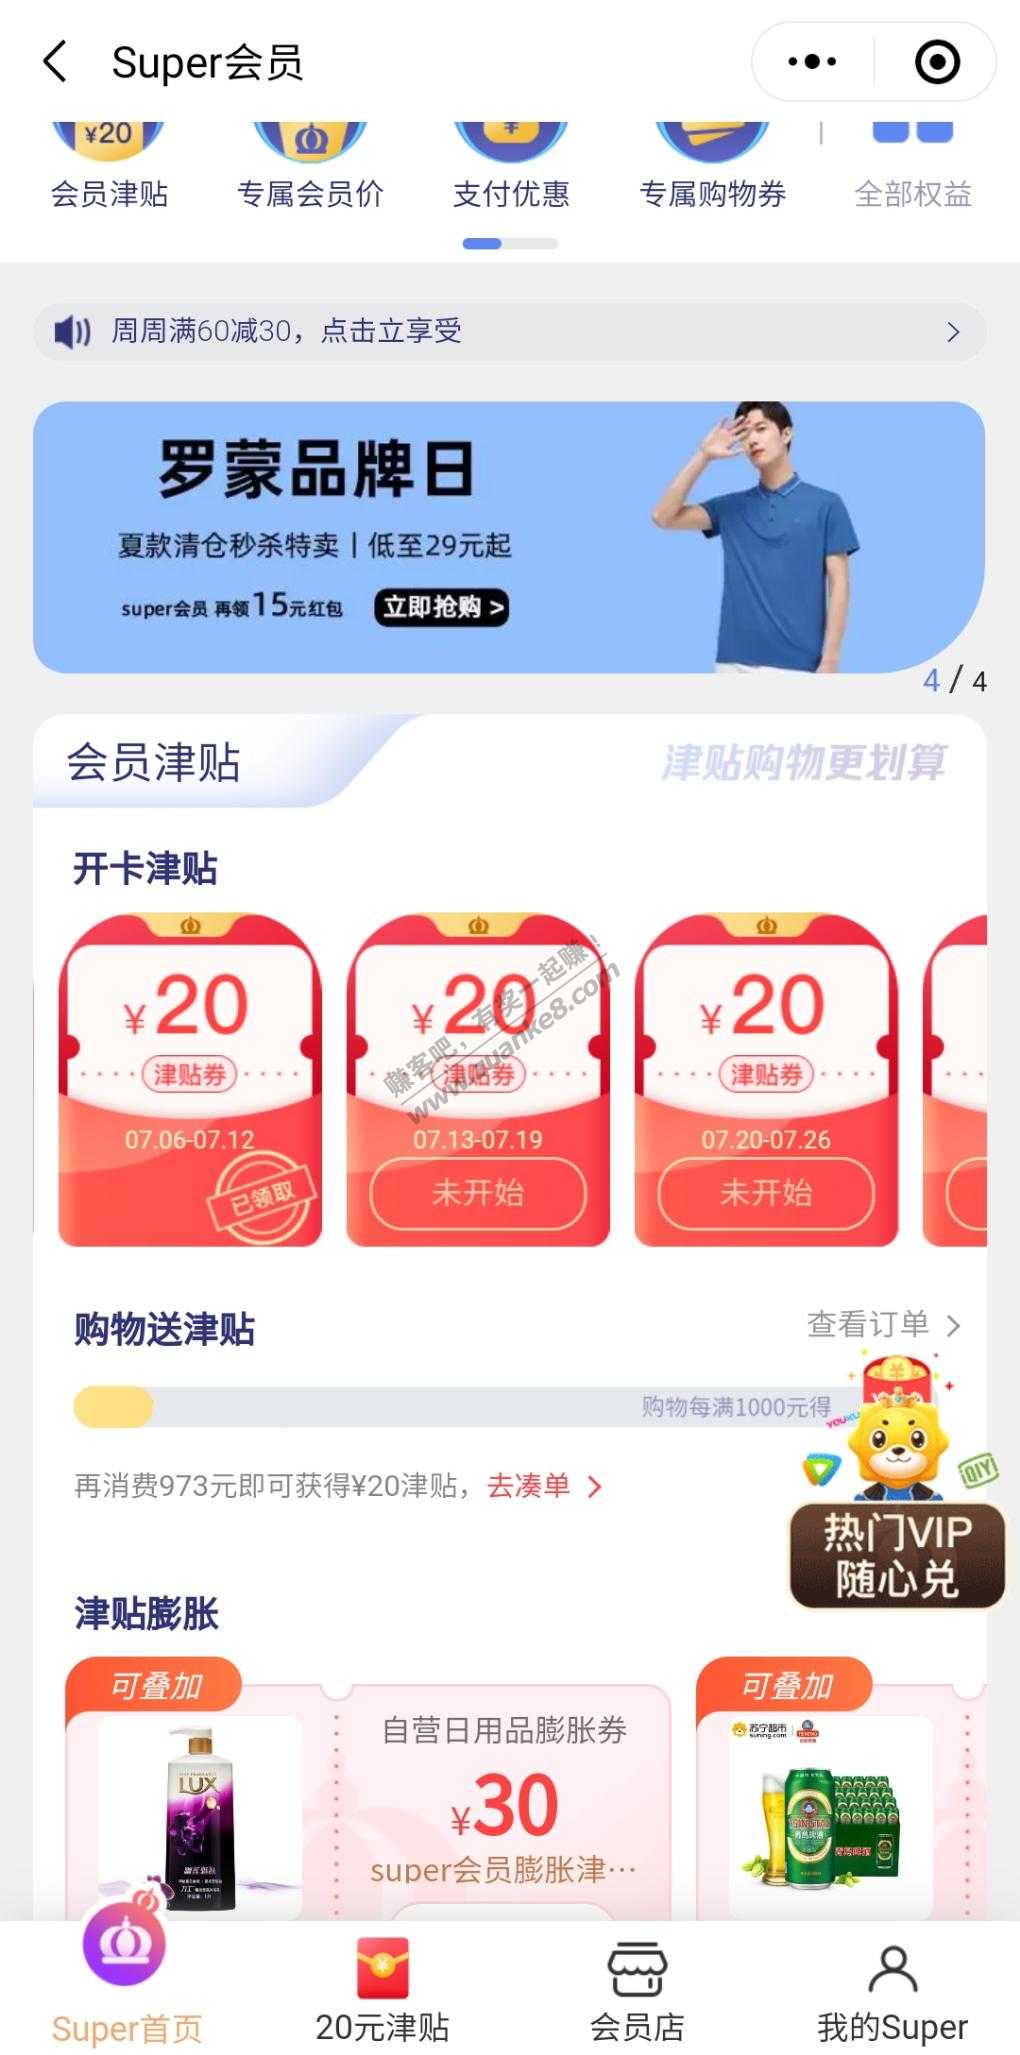 7月开苏宁会员的去看下-20津贴又可以周周领了-惠小助(52huixz.com)